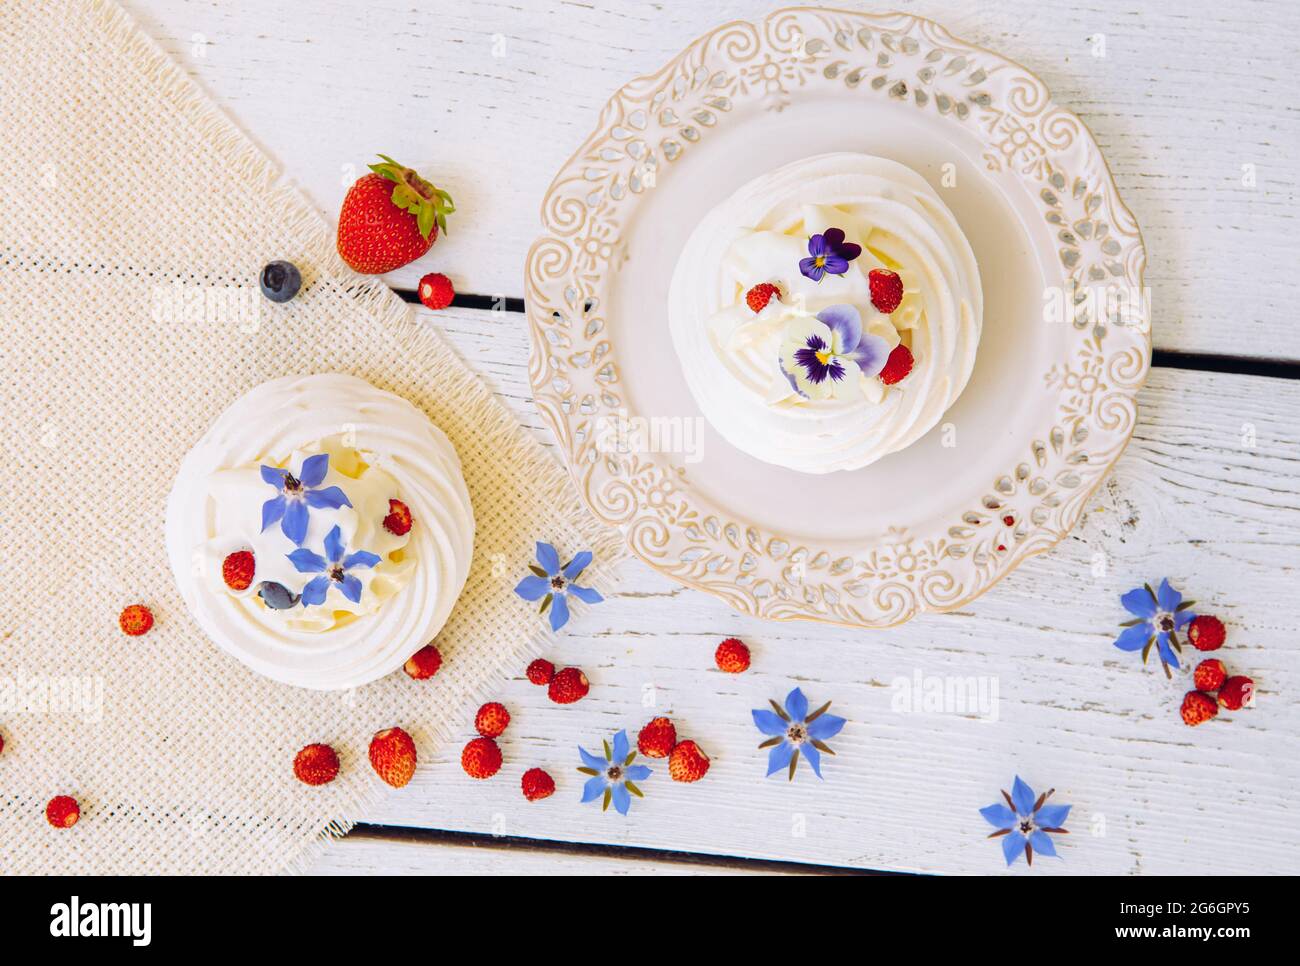 Pequeños pasteles de merengue, decorados con nata montada, bayas frescas y flores comestibles de la vida real. Foto de stock